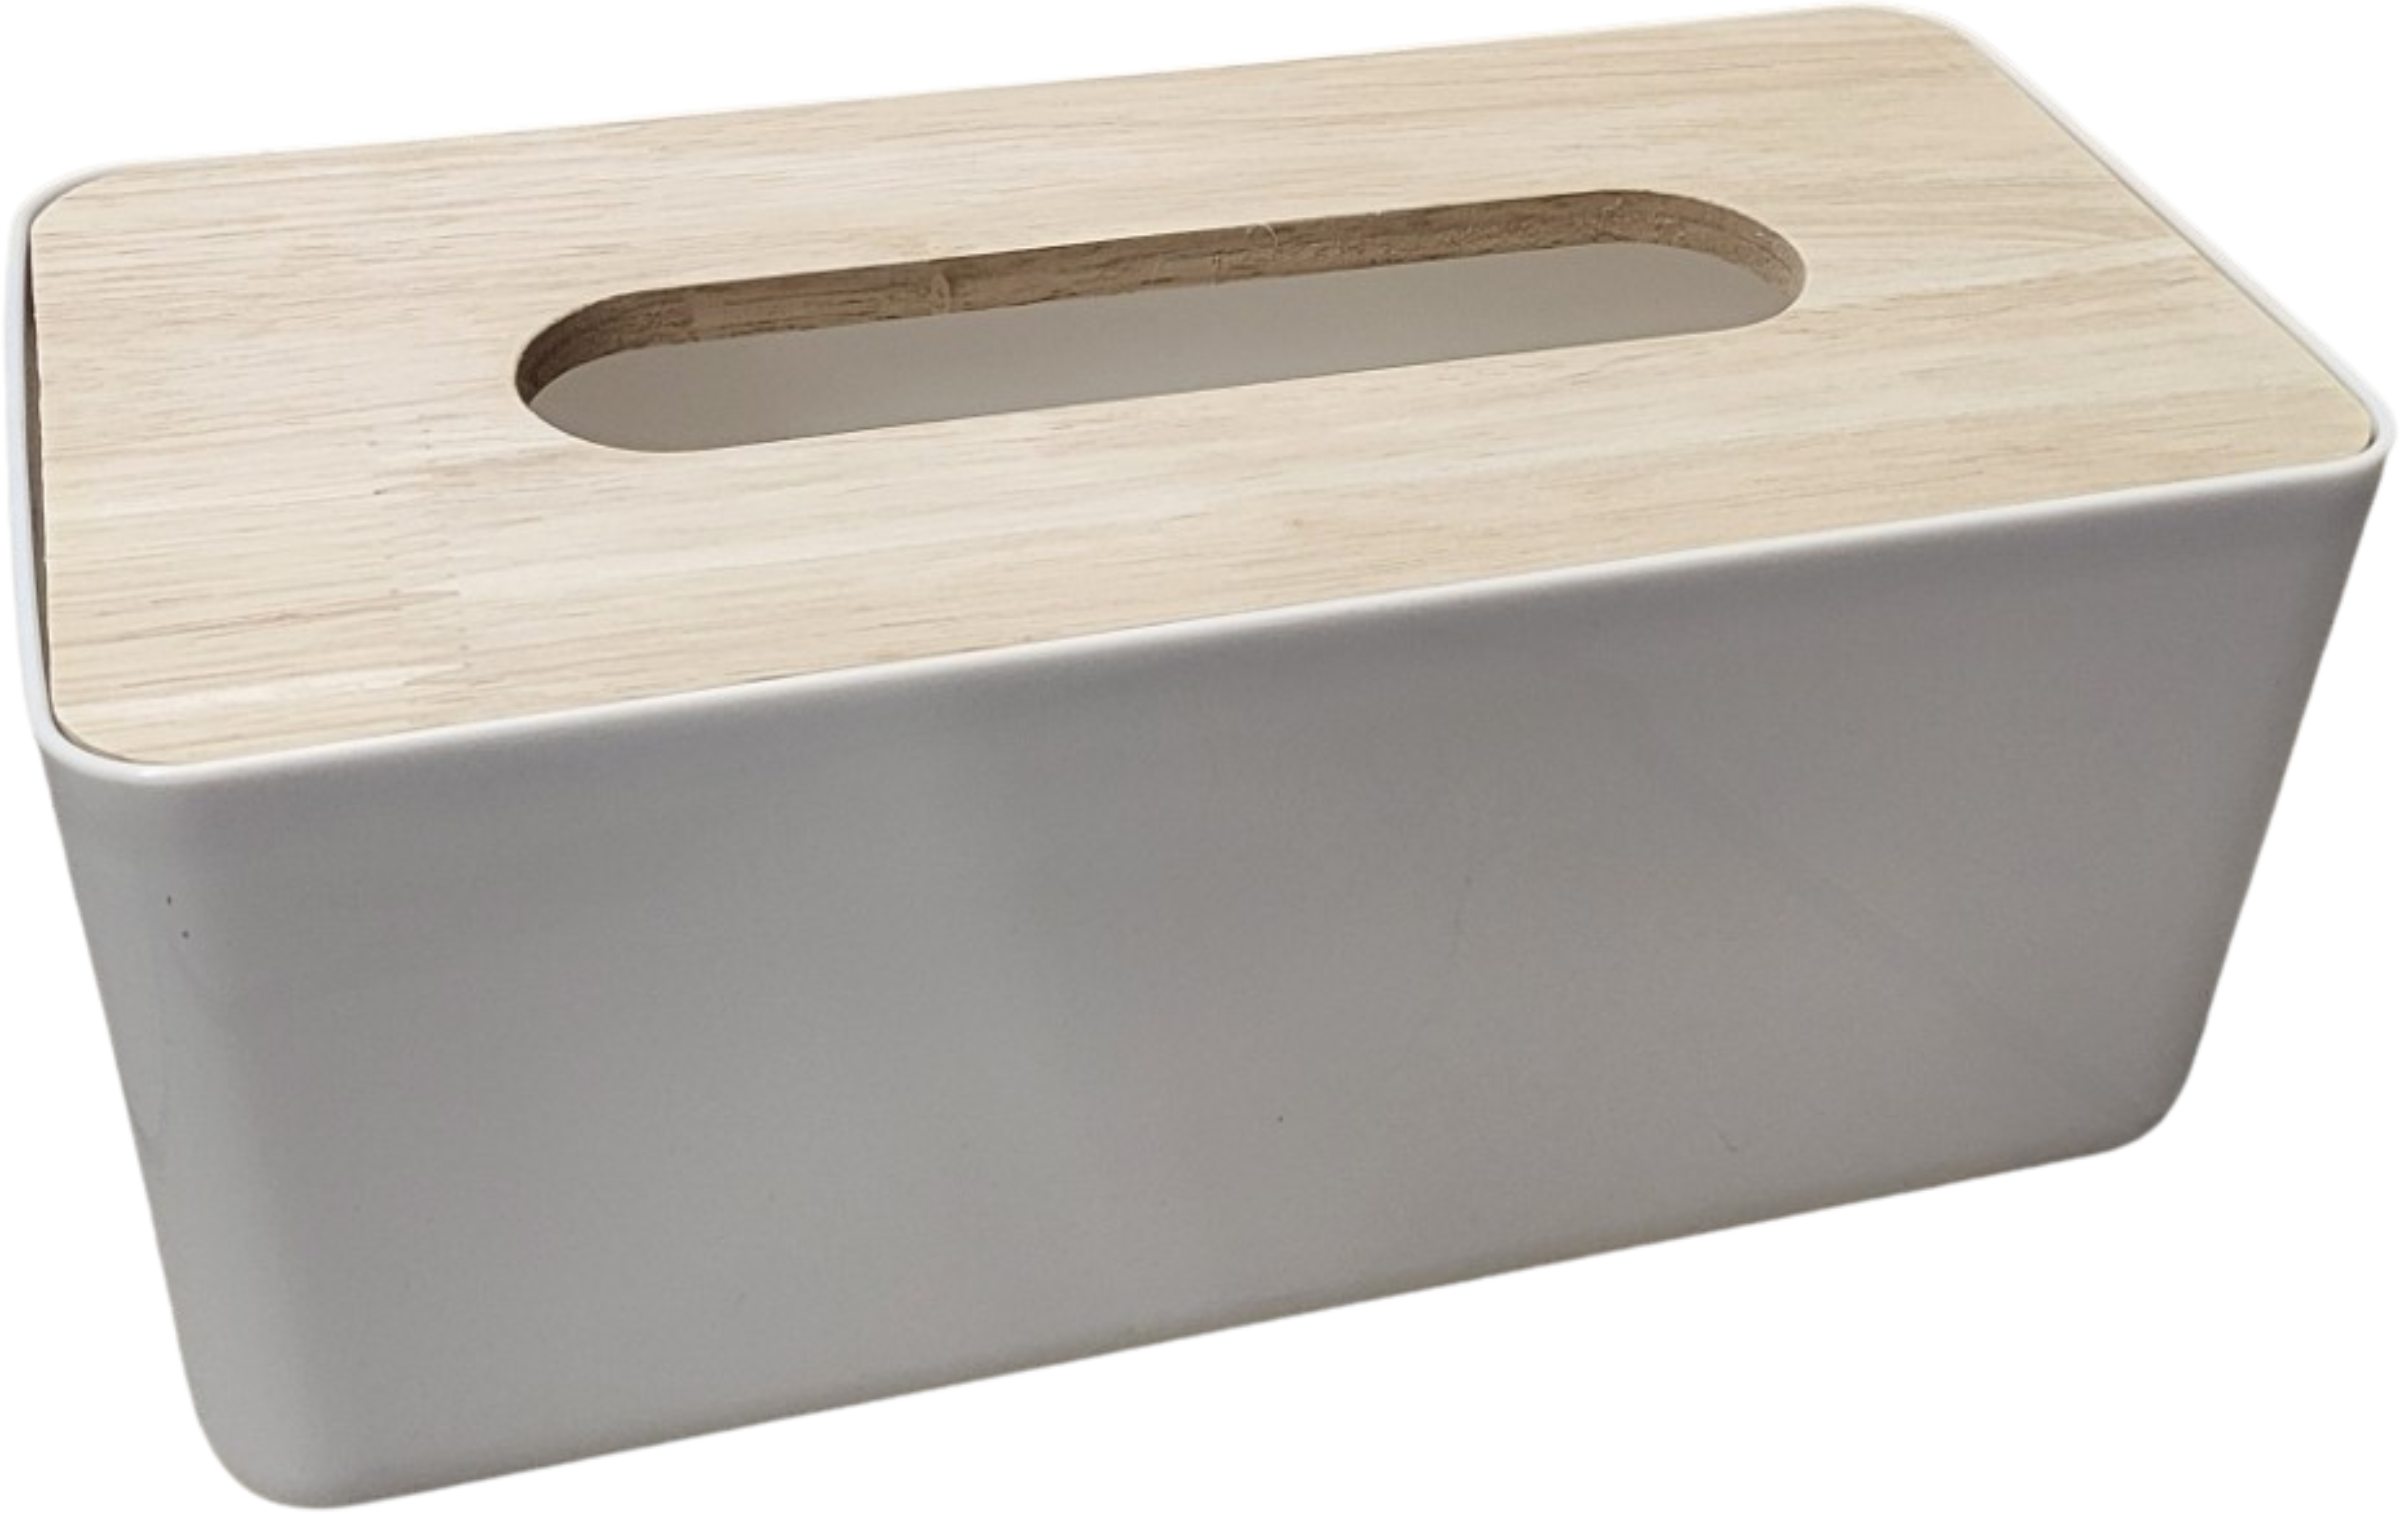 Kosmetiktücher Taschentücher Box Tücherbox Holz Kunststoff Taschentuchspender